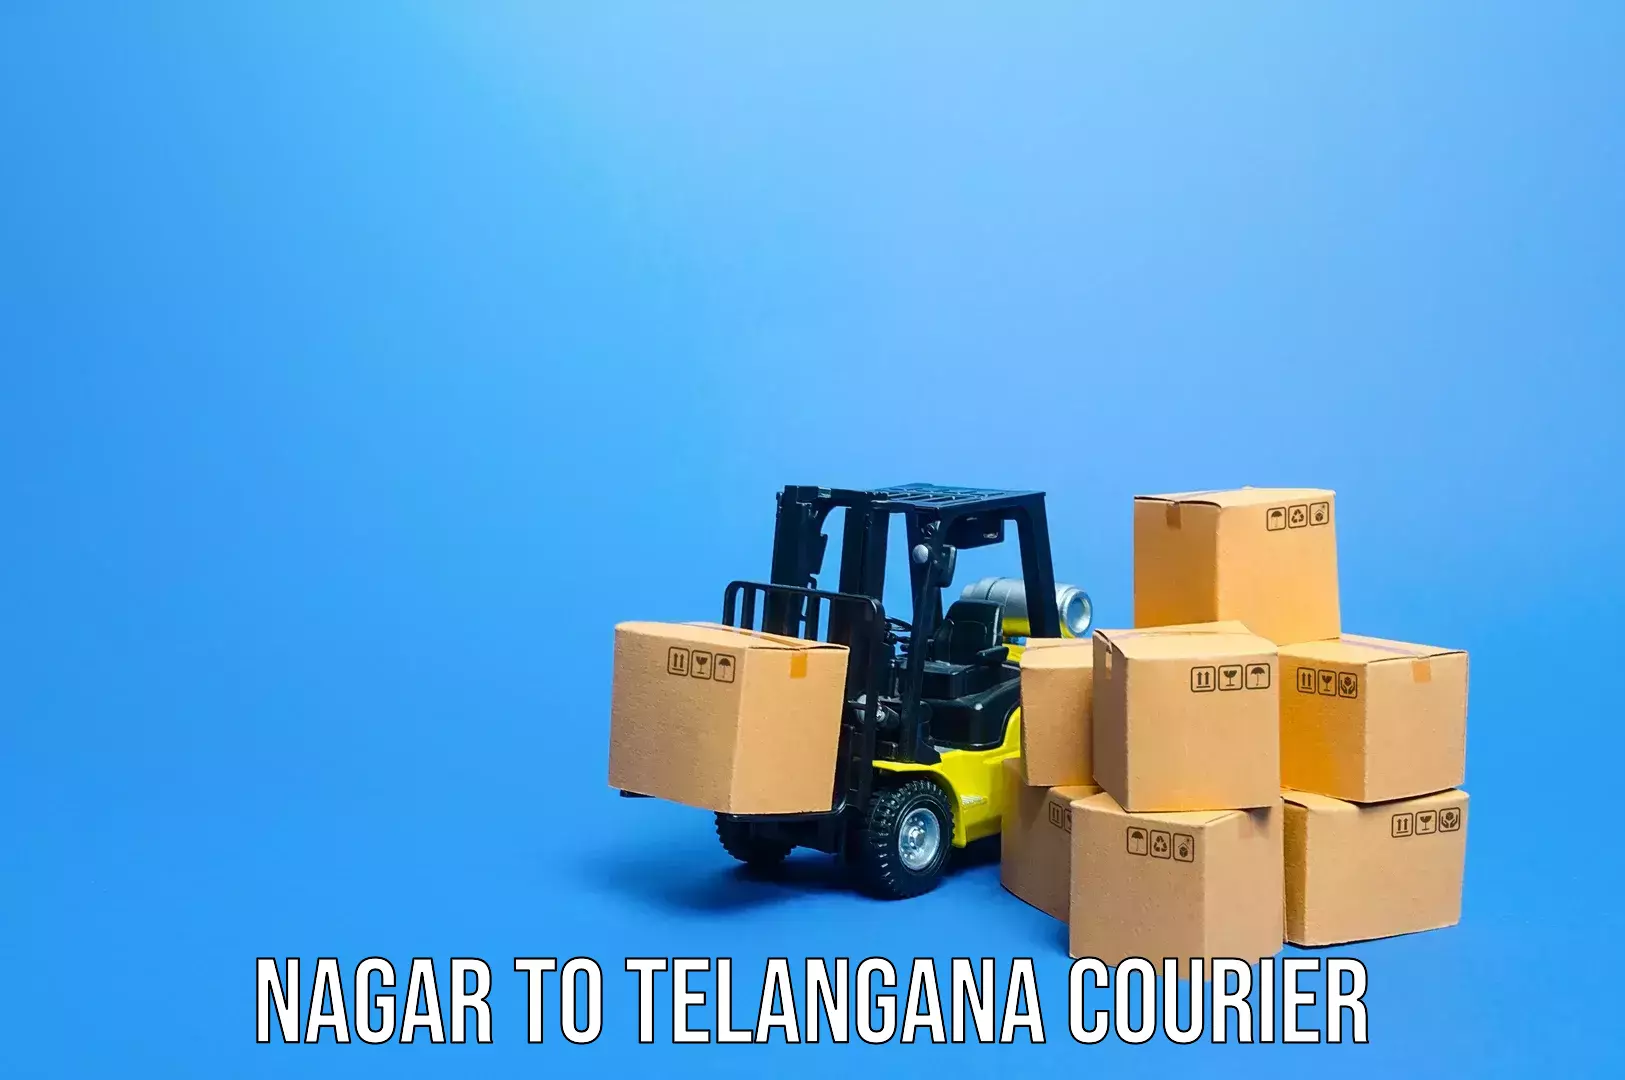 Baggage transport network Nagar to Tiryani